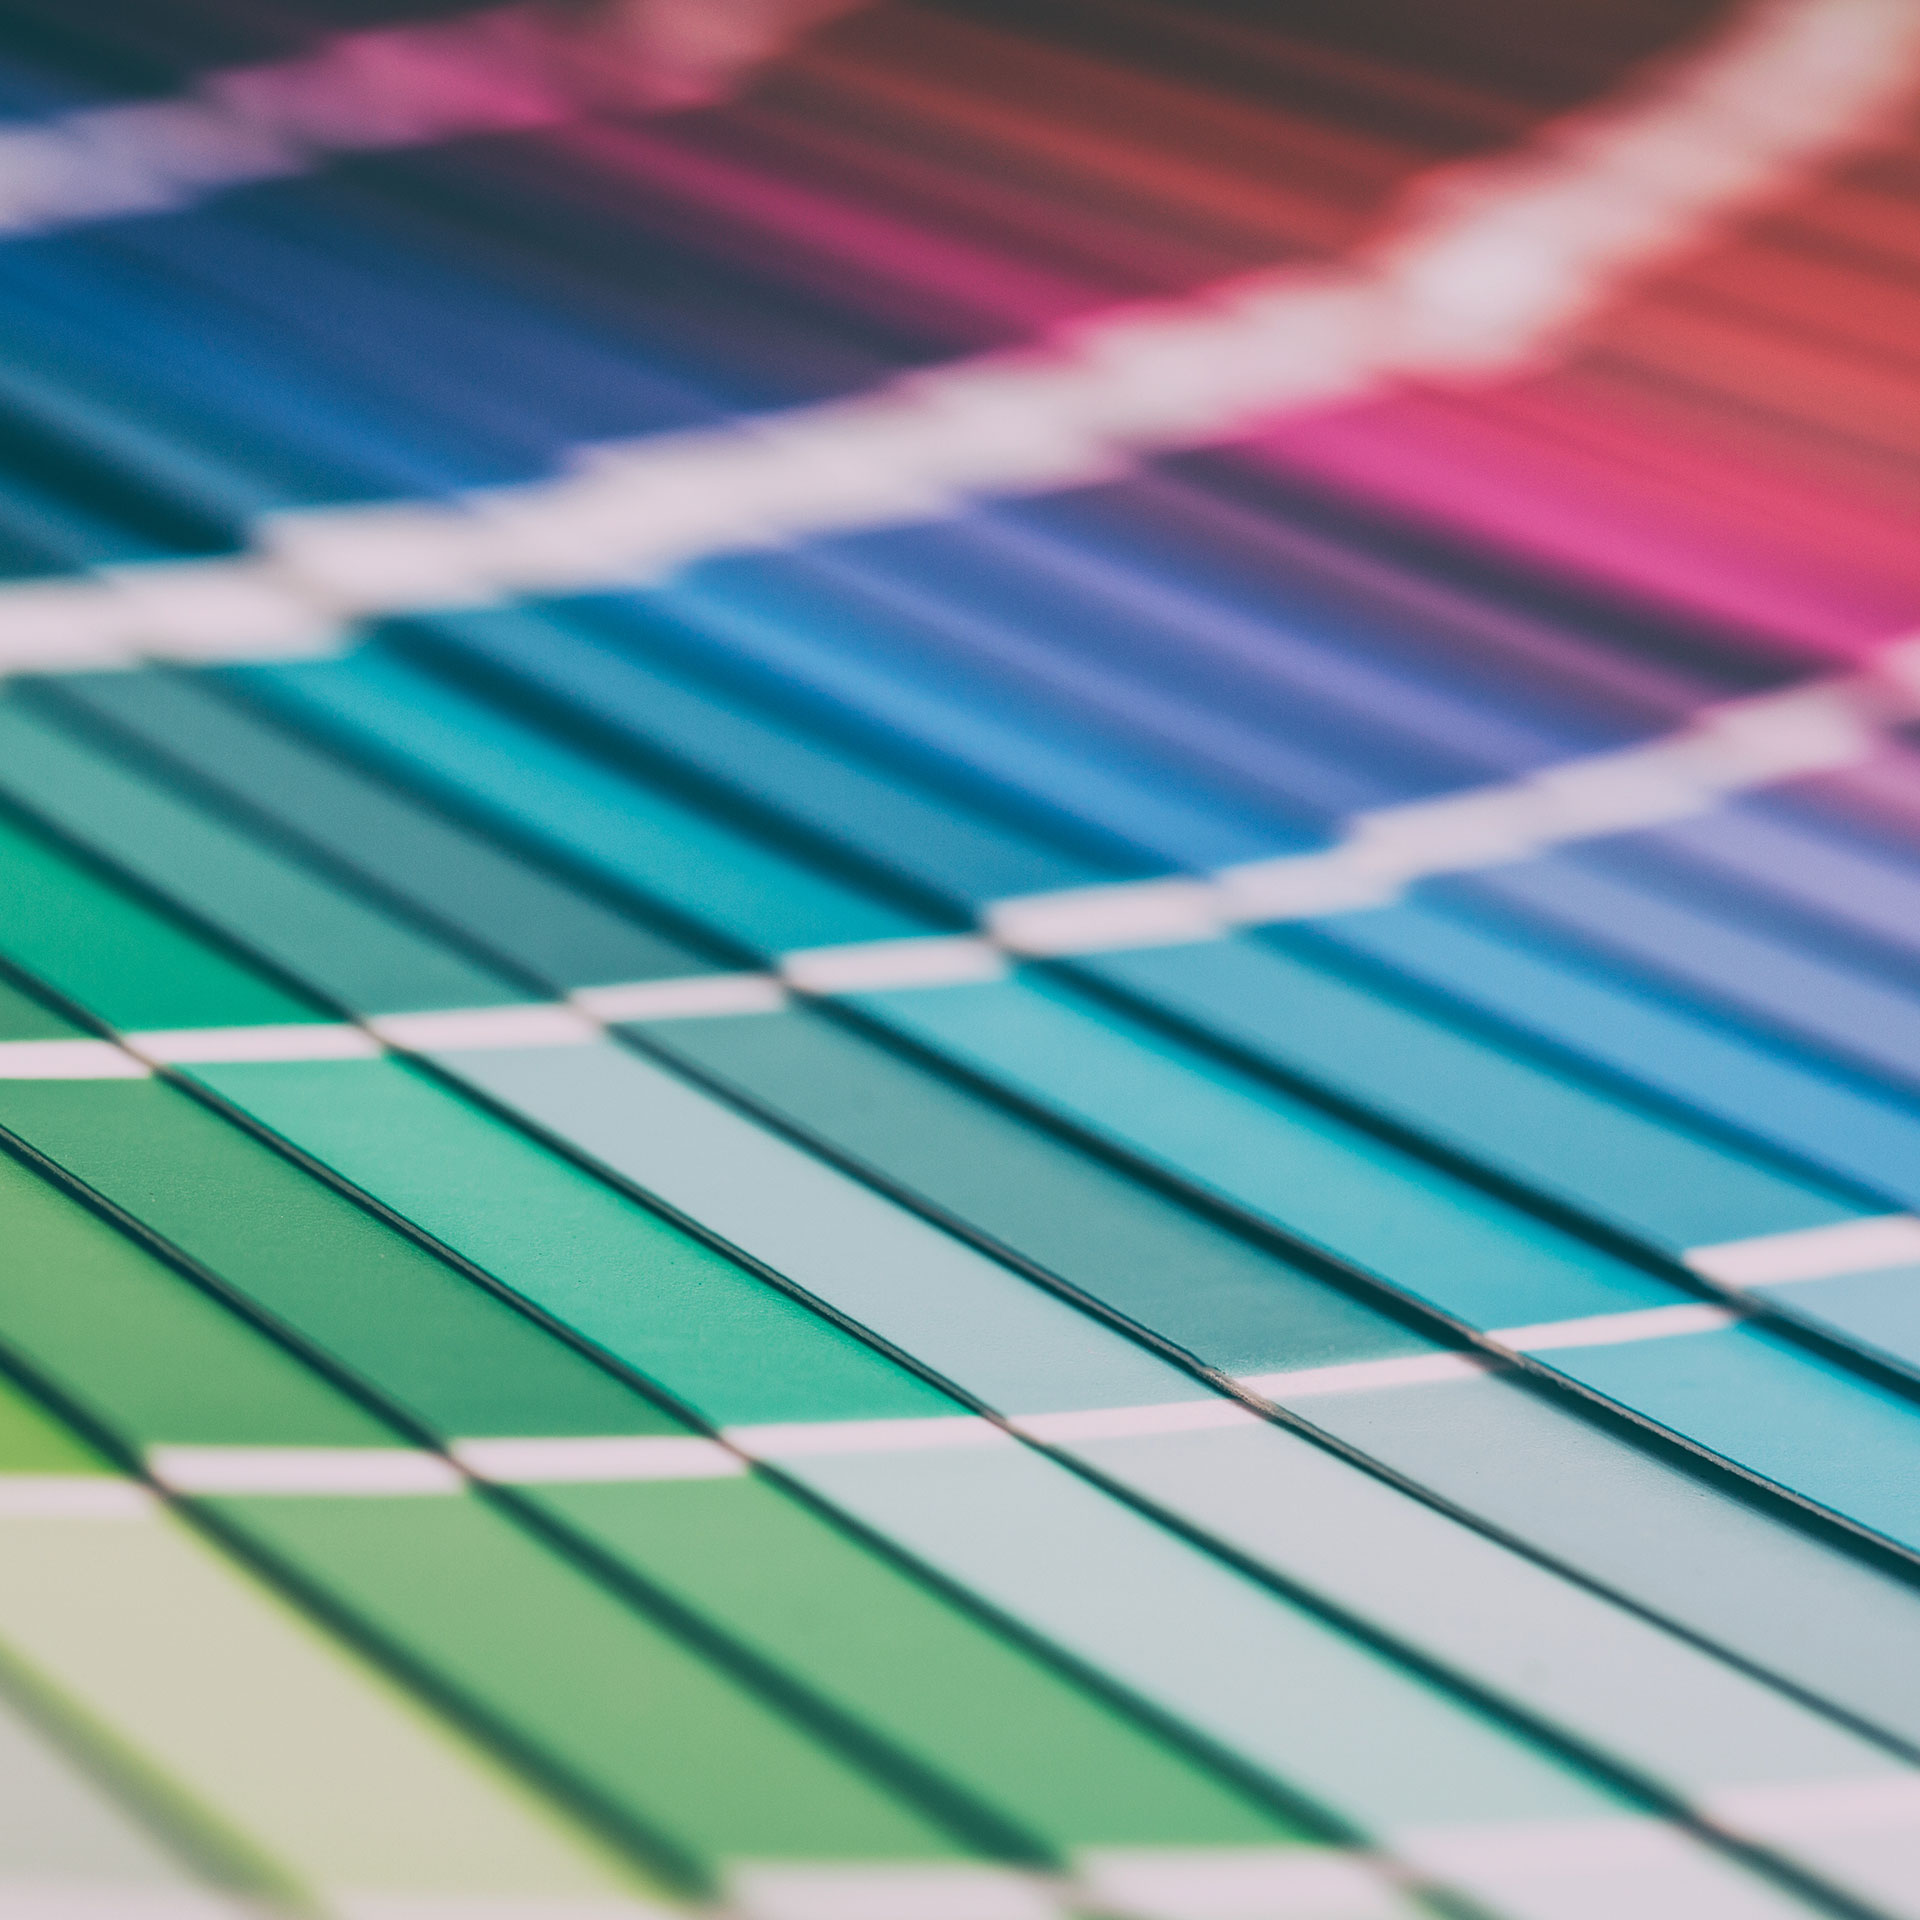 Offener Pantone-Farbmusterkatalog für die Farbkalibrierung